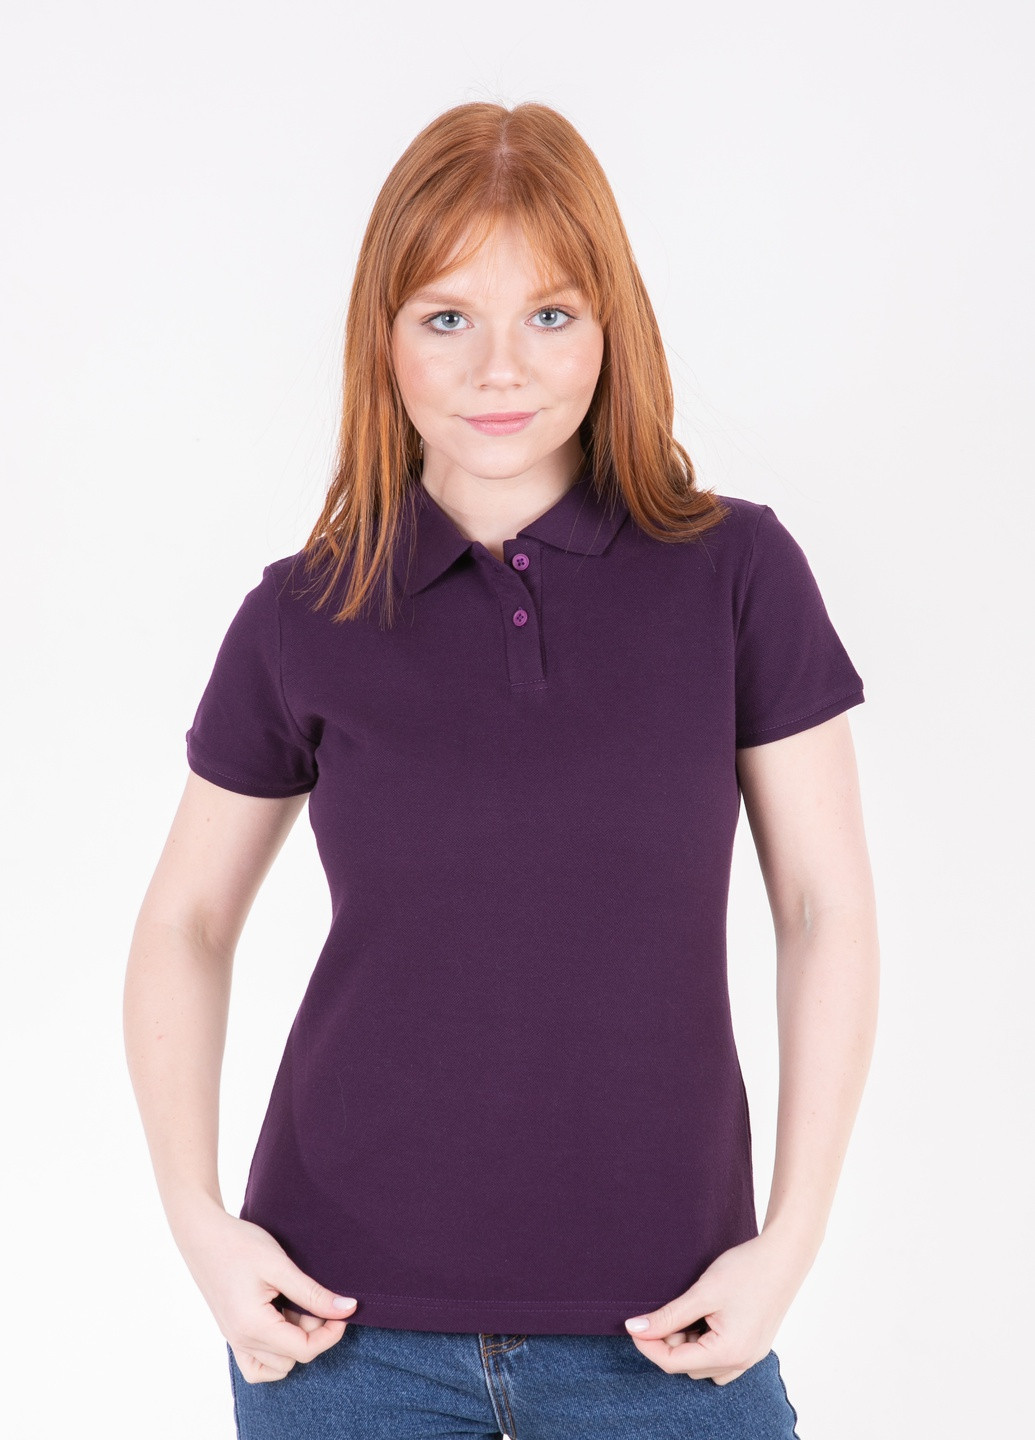 Темно-фиолетовая женская футболка-футболка поло женская TvoePolo однотонная